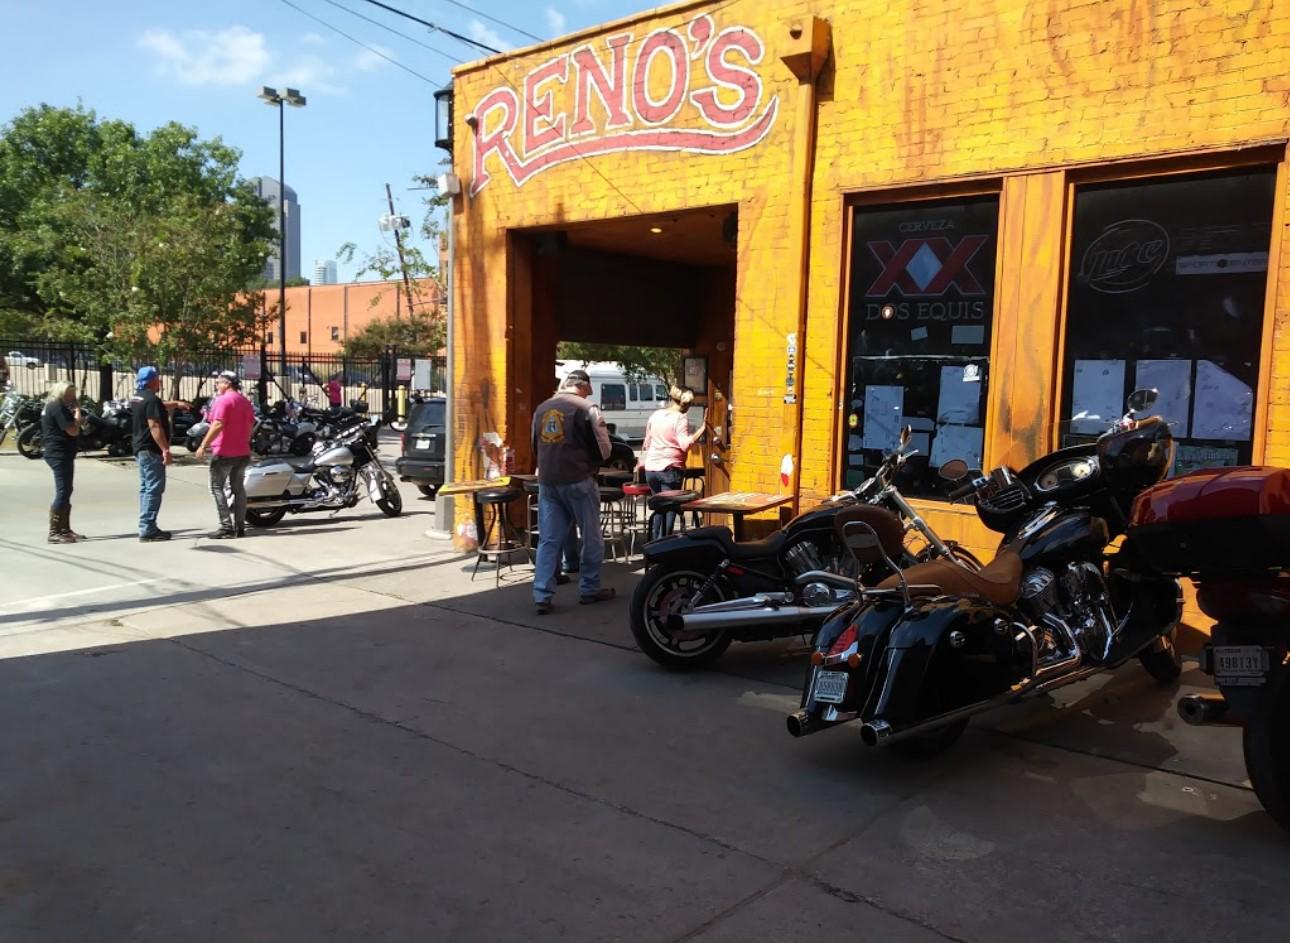 Reno's Chop Shop